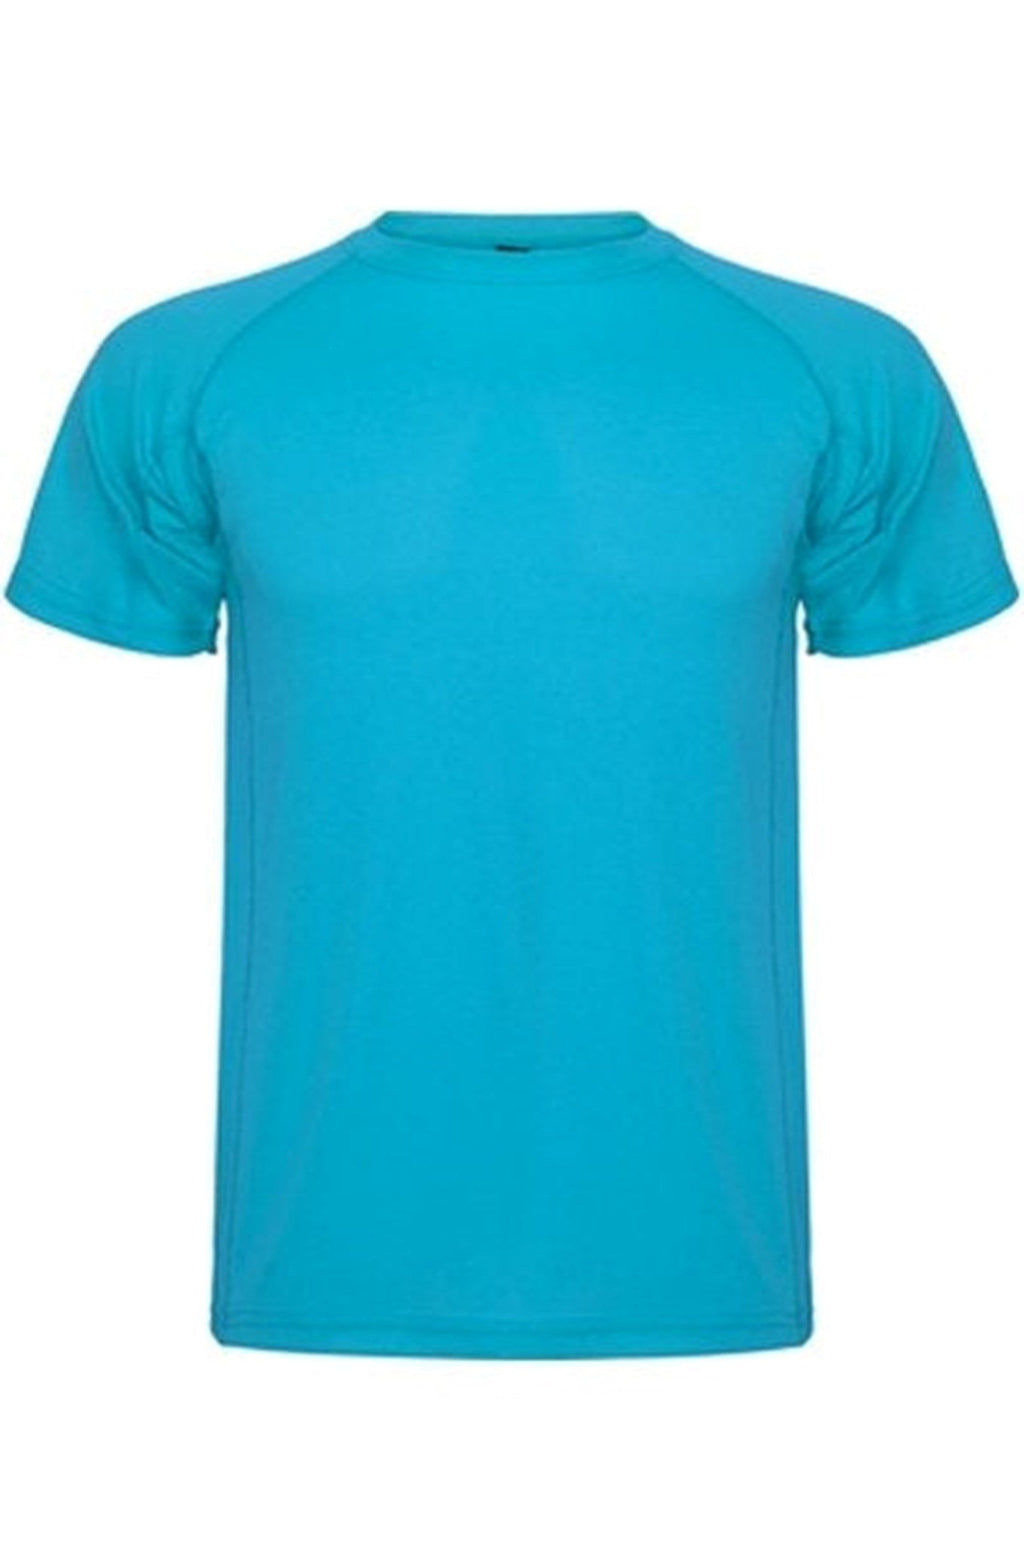 Trænings T-shirt - Turkis blå